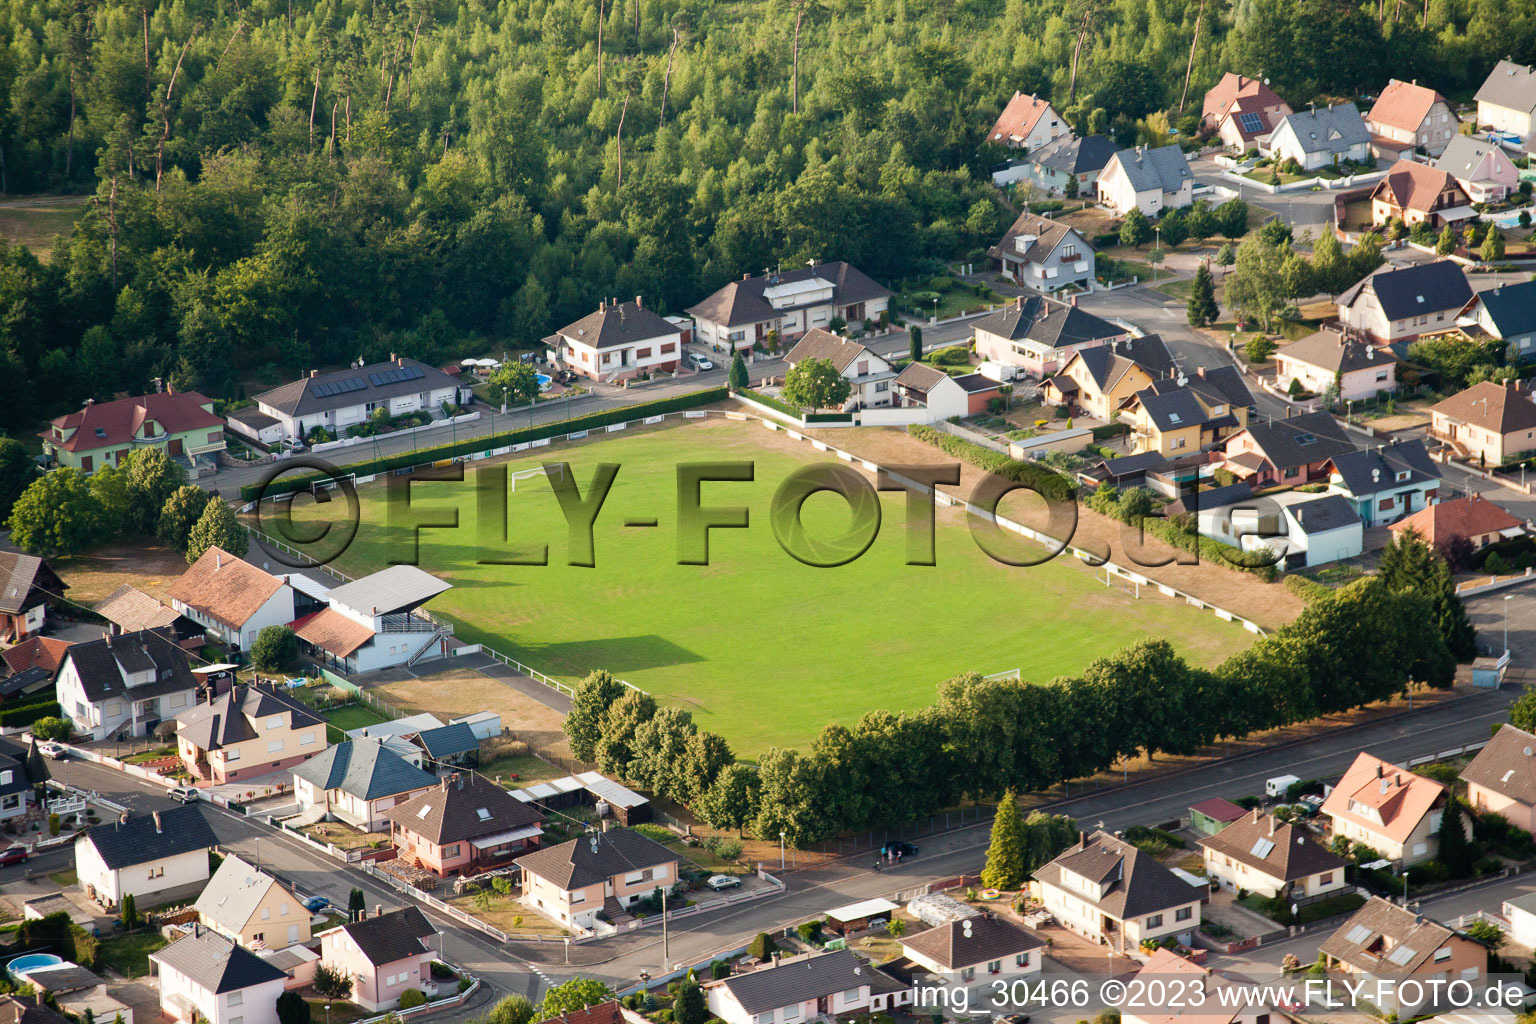 Aerial view of Schirrhoffen in Schirrhein in the state Bas-Rhin, France